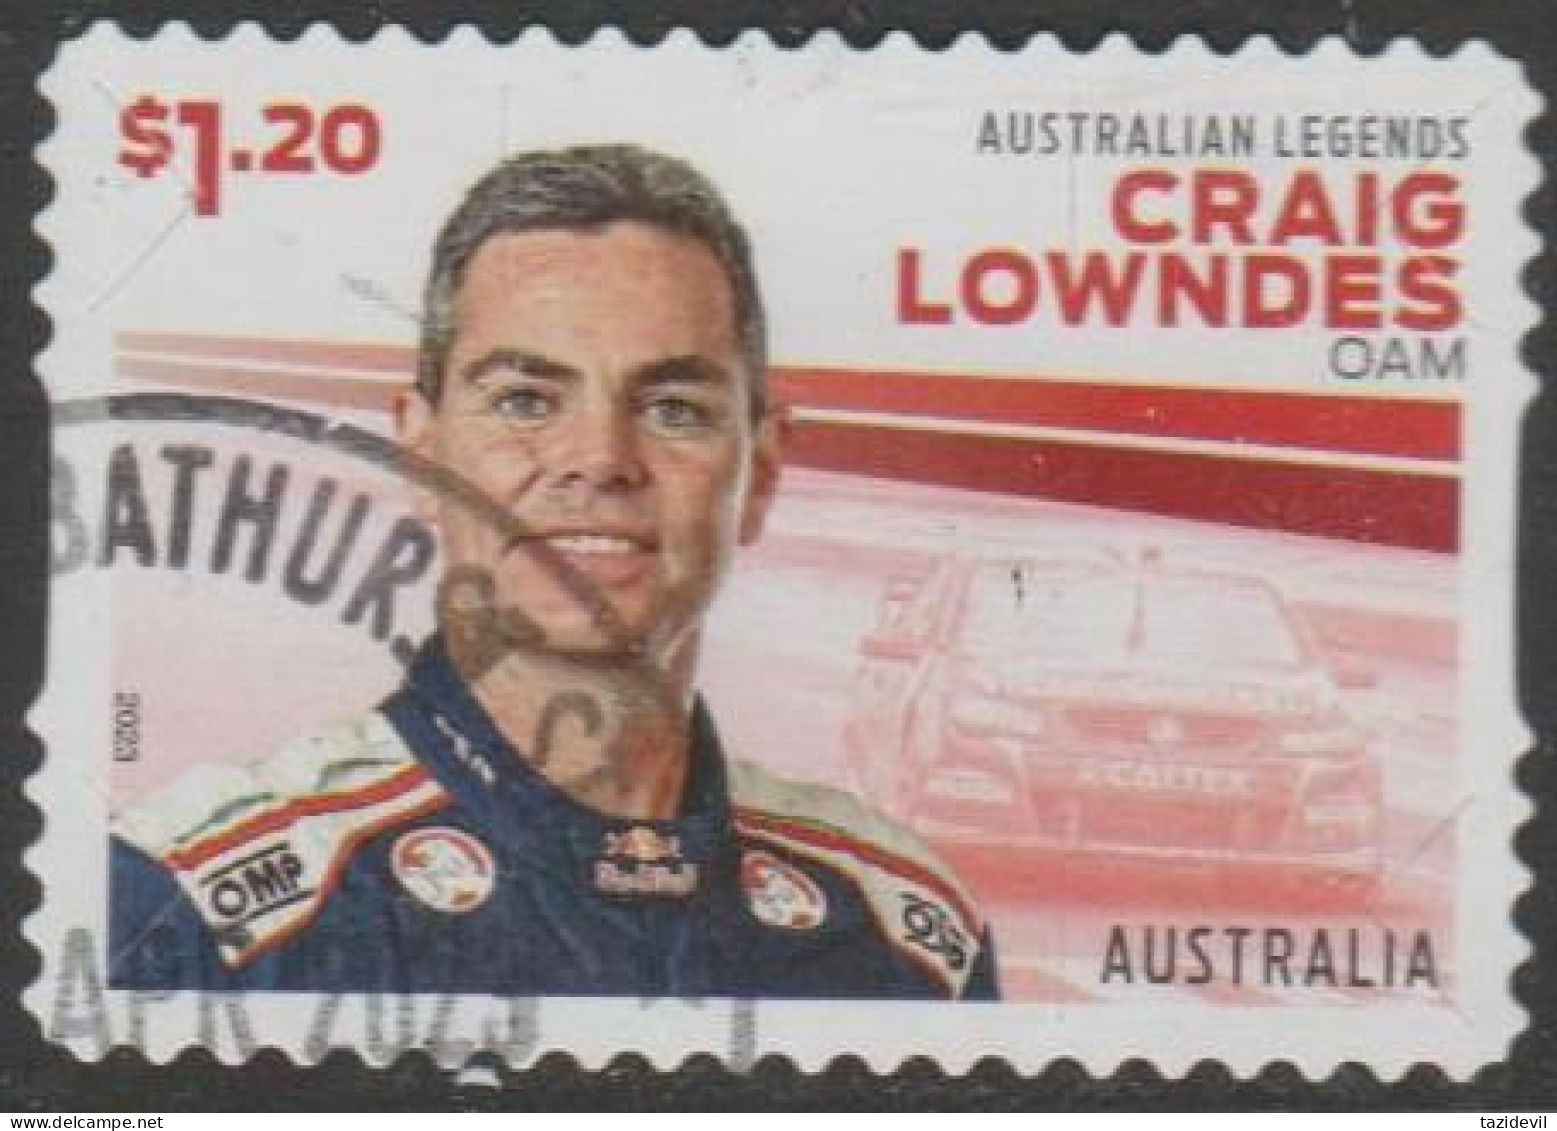 AUSTRALIA - DIE-CUT-USED 2023 $1.20 Legends Of Motor Sport - Craig Lowdens OAM - Gebruikt